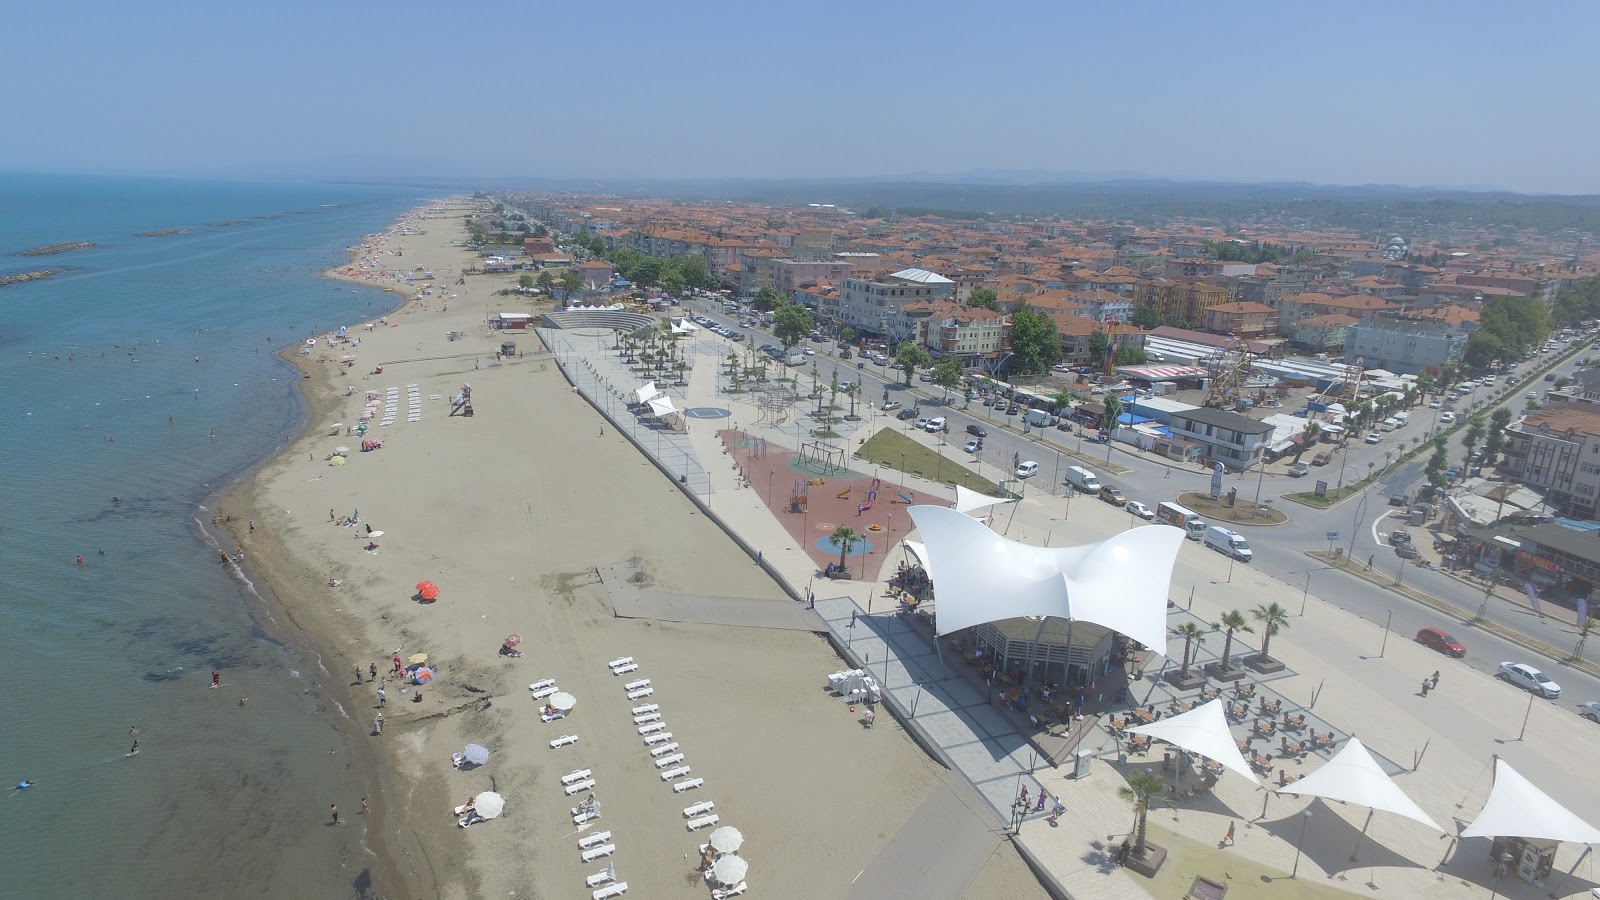 Karasu Halk Plaji'in fotoğrafı geniş plaj ile birlikte